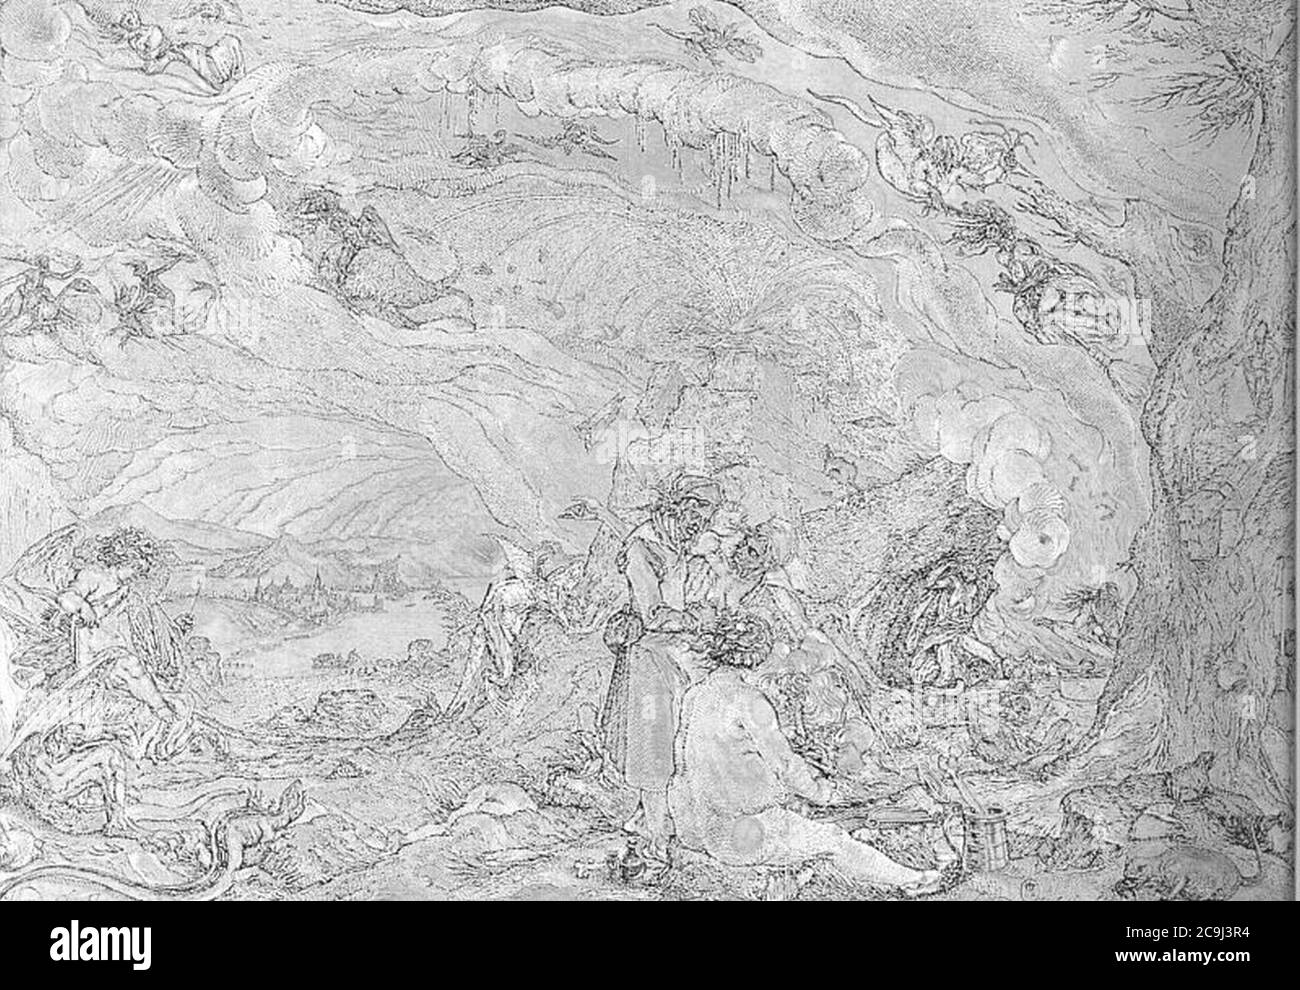 Jacques de Gheyn (I) - la cuisine des sorcières - gravure - 1500s. Banque D'Images